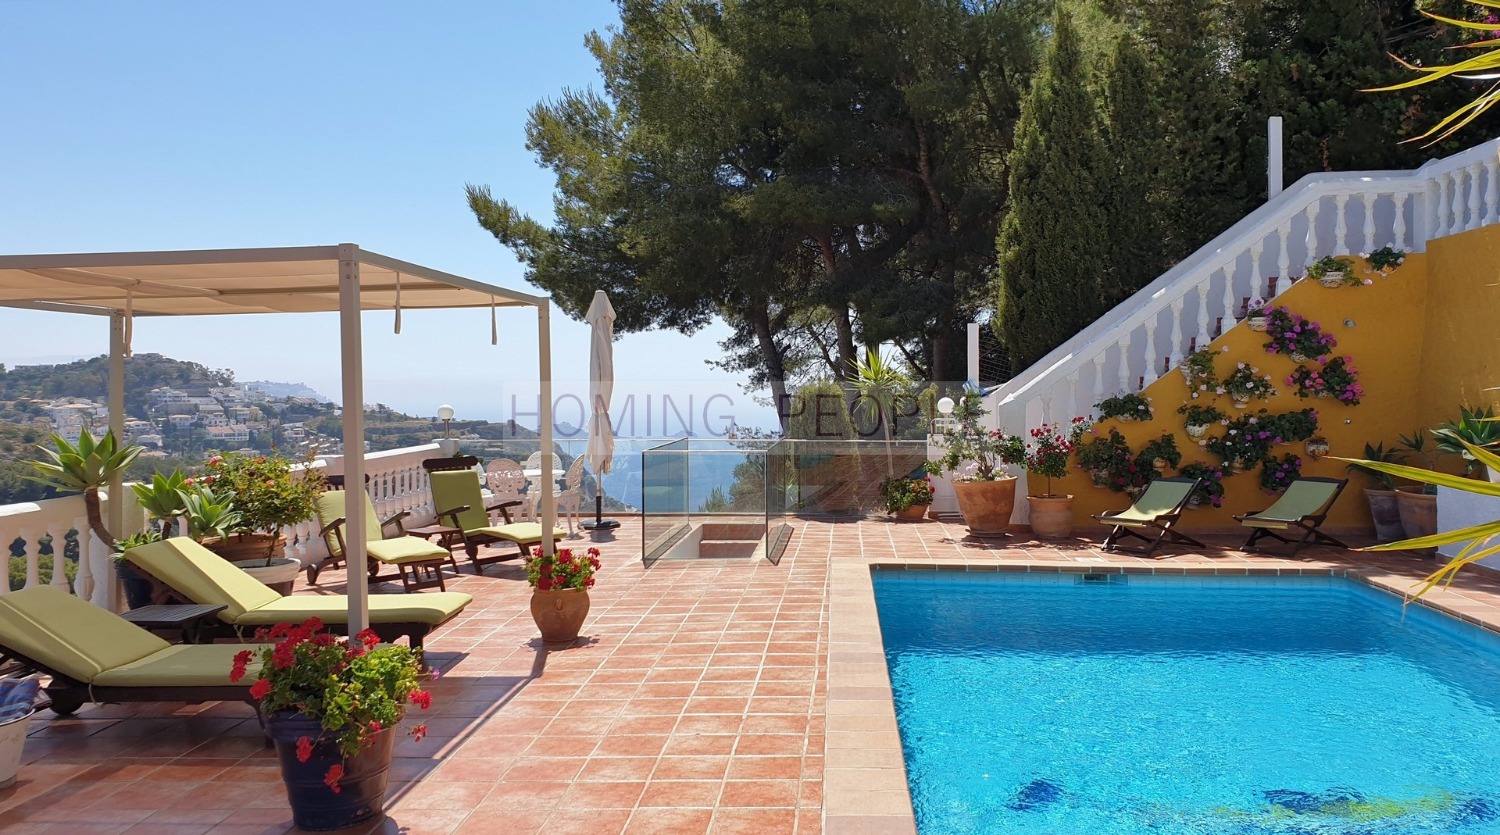 Villa avec piscine et vues sur mer, située dans un résidenciel très apprécié